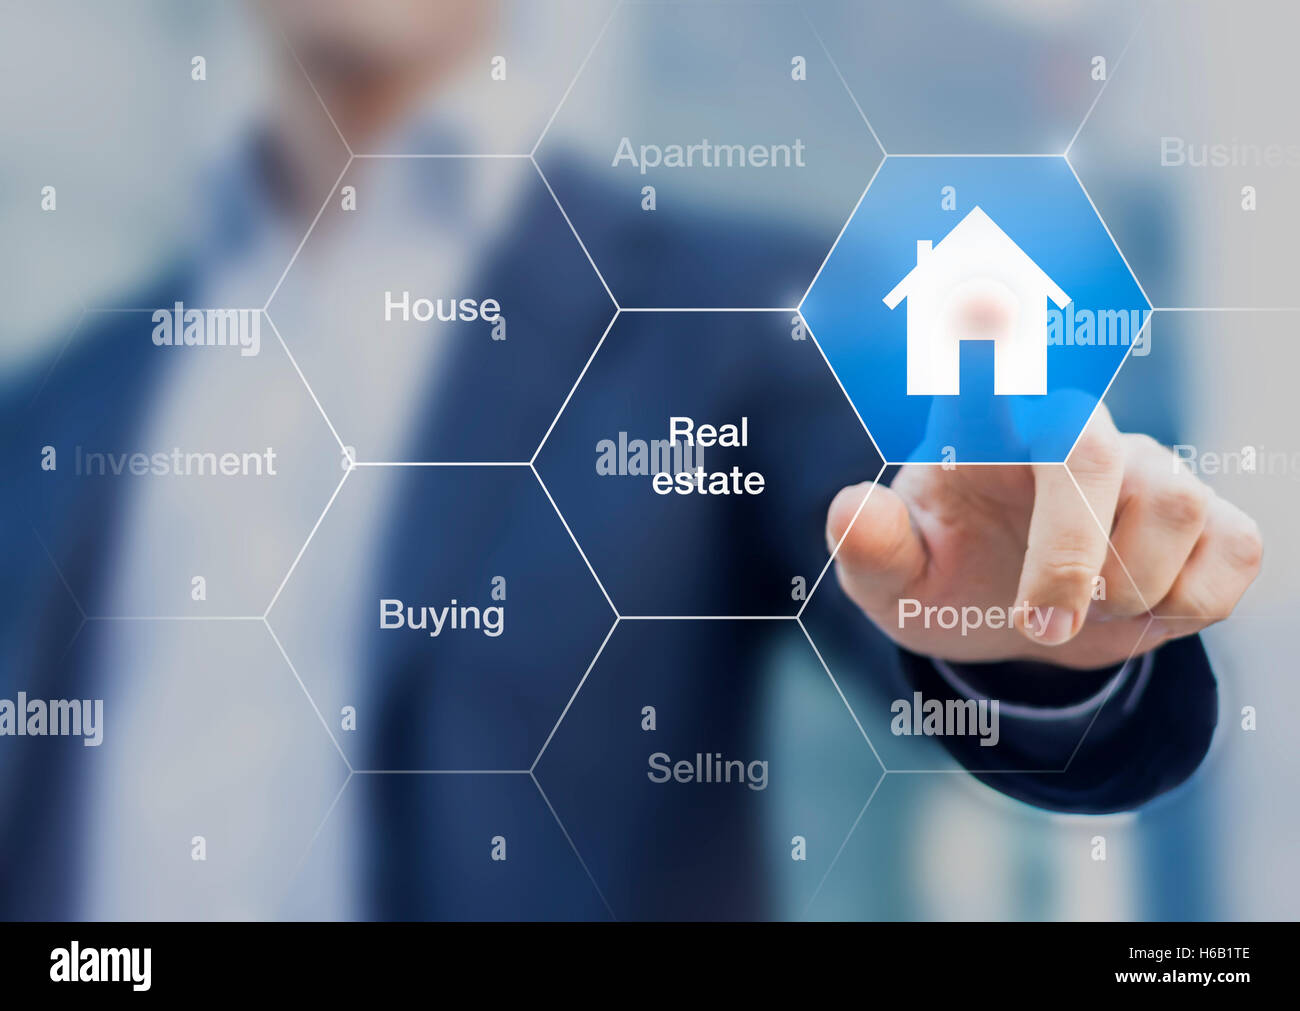 Real Estate Agent presionando un botón con el símbolo de la casa en una pantalla transparente Foto de stock